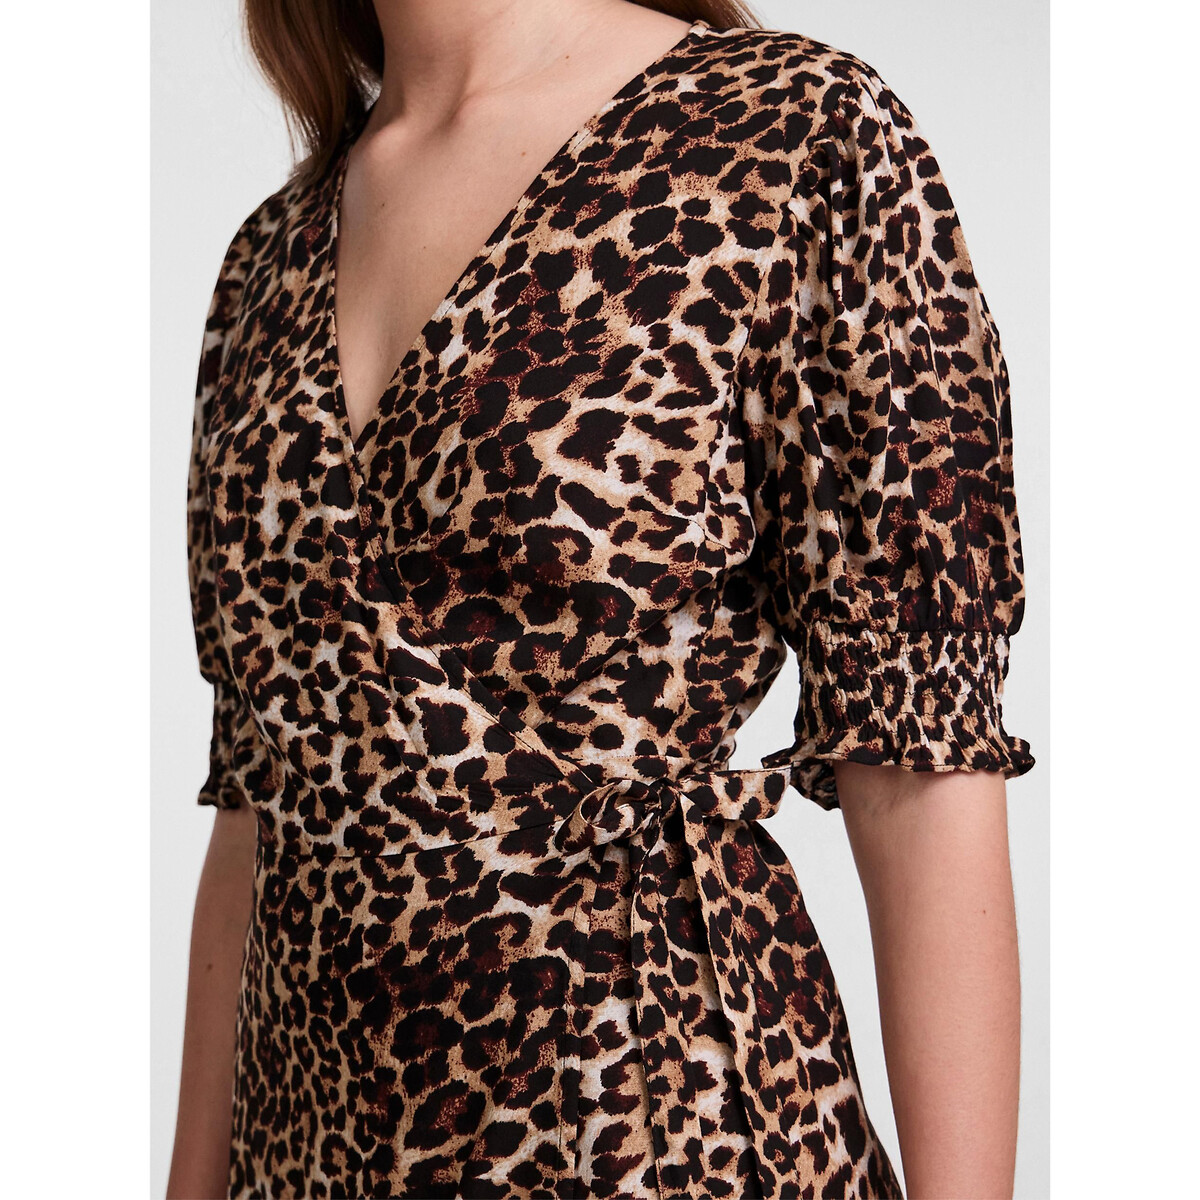 Платье С запахом и леопардовым принтом S другие LaRedoute, размер S - фото 2